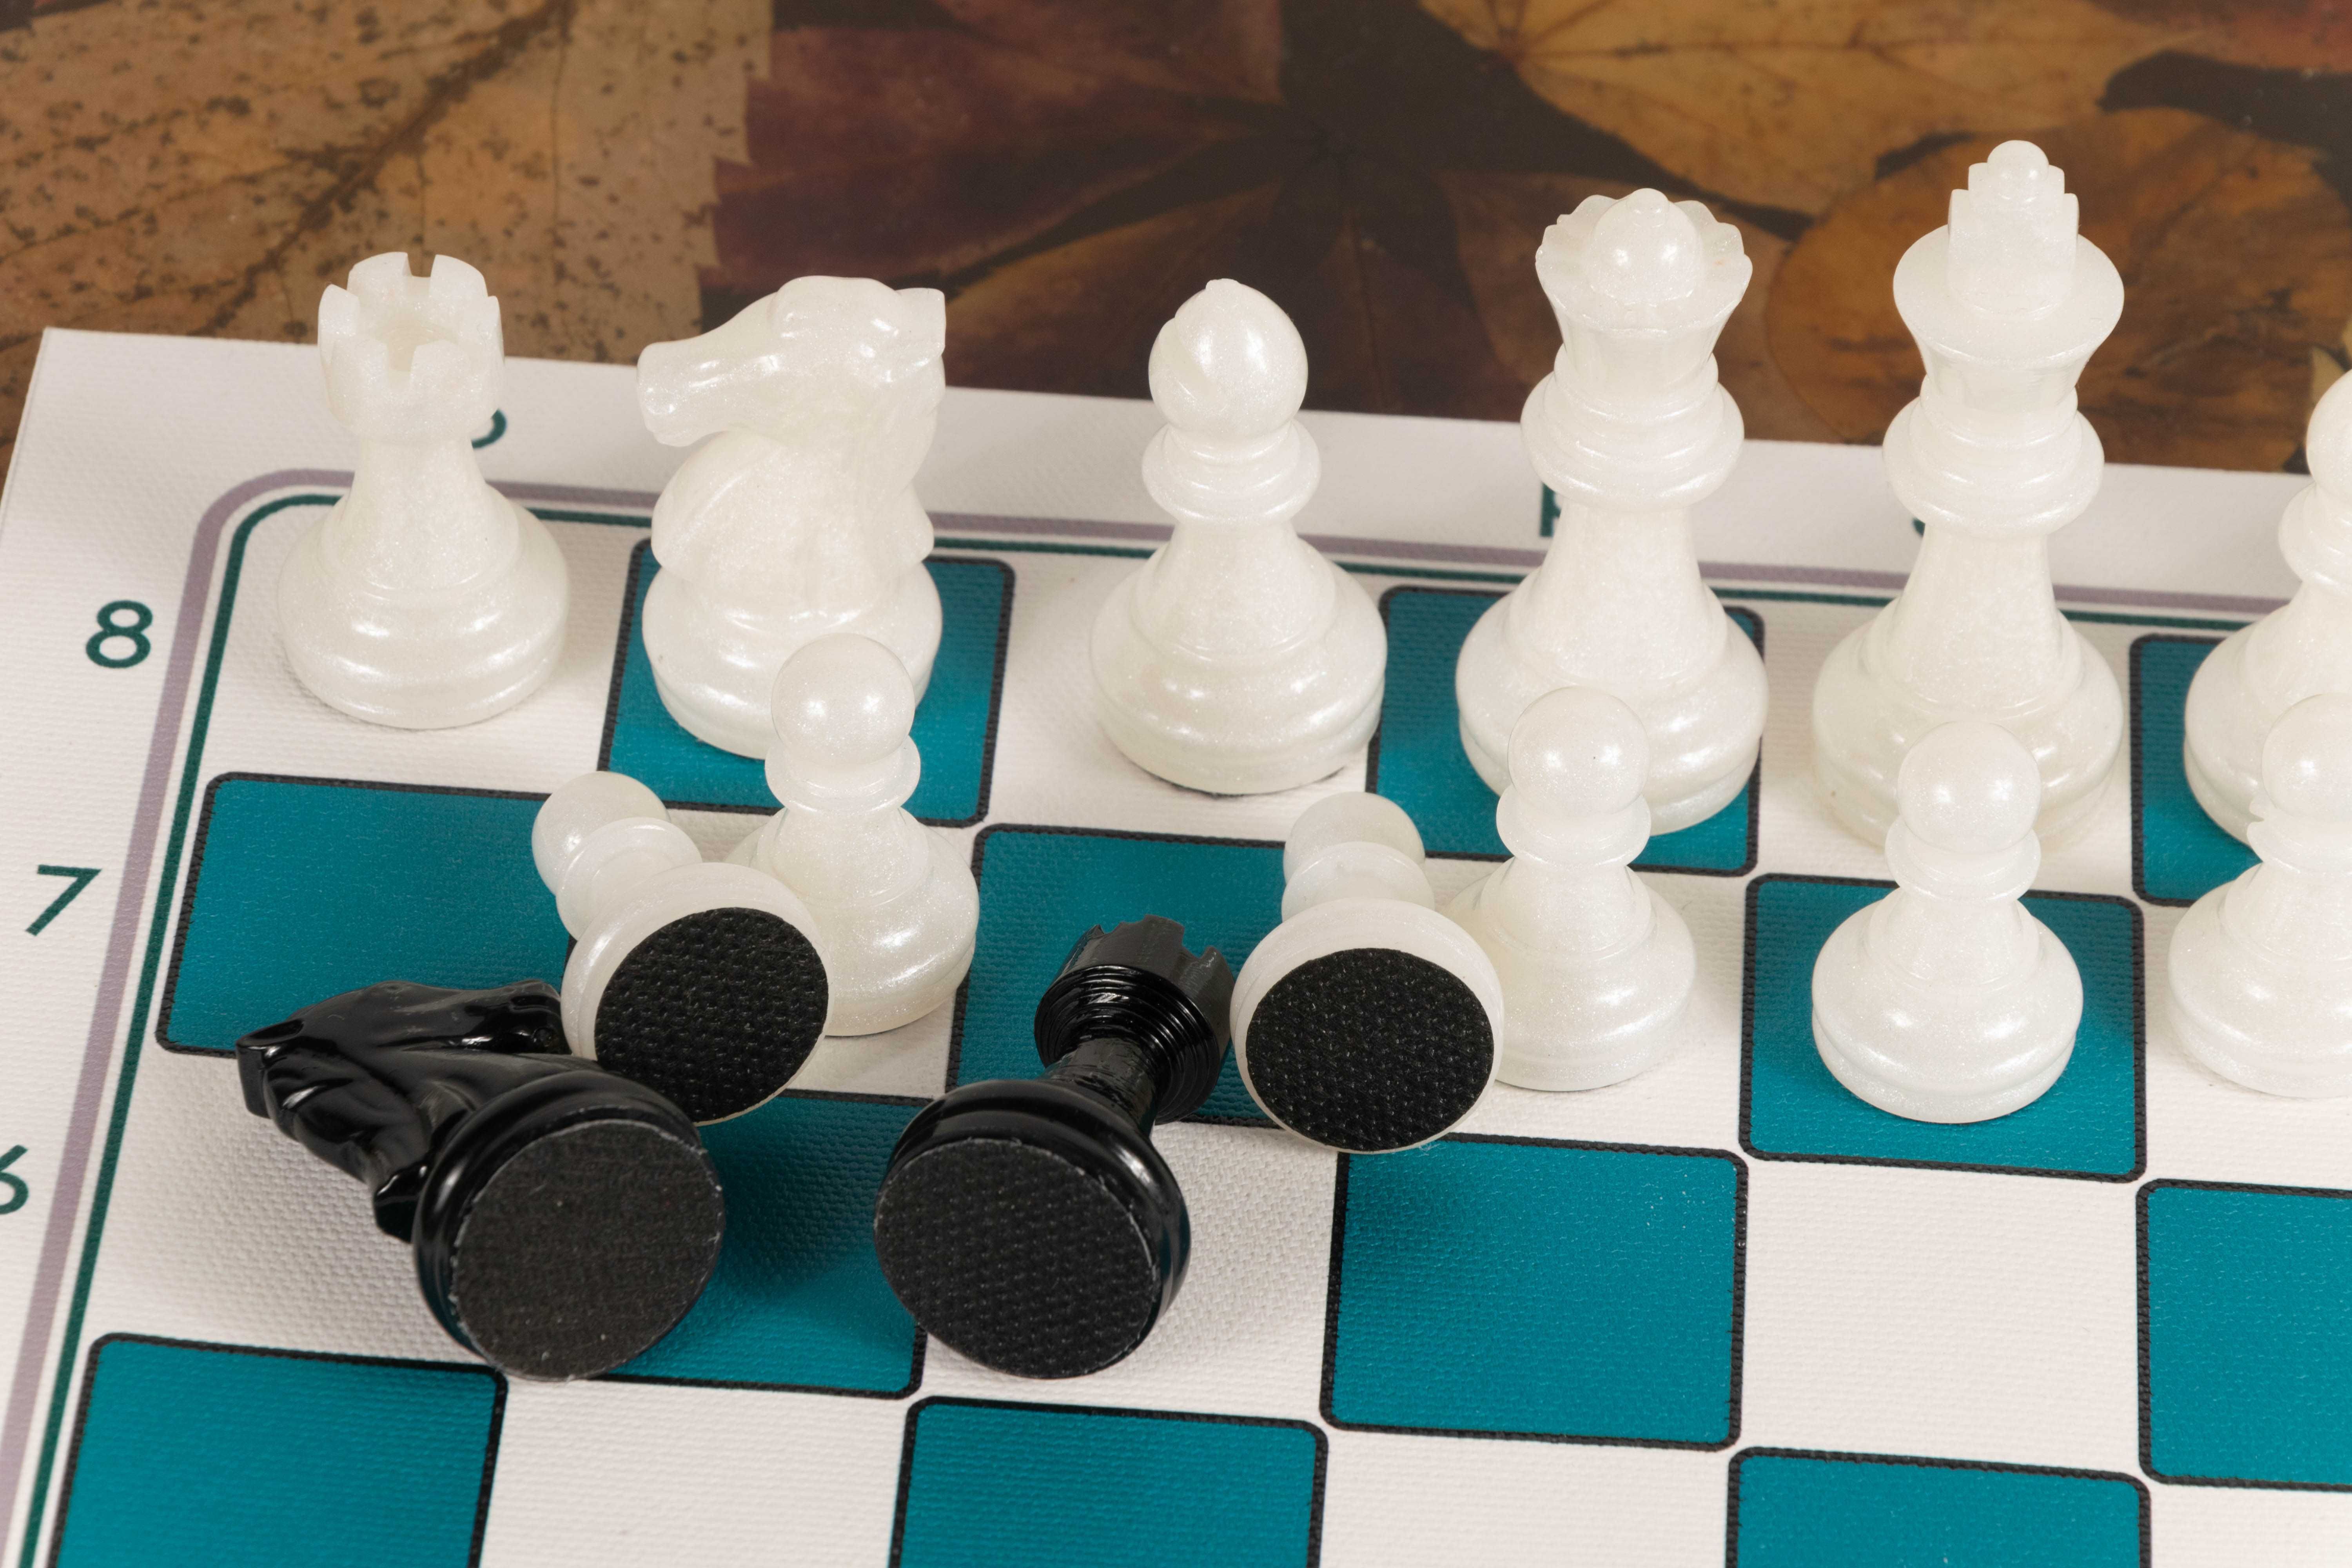 Set Piese de Șah din Rășină ALB/NEGRU (Ideal pentru cadou)